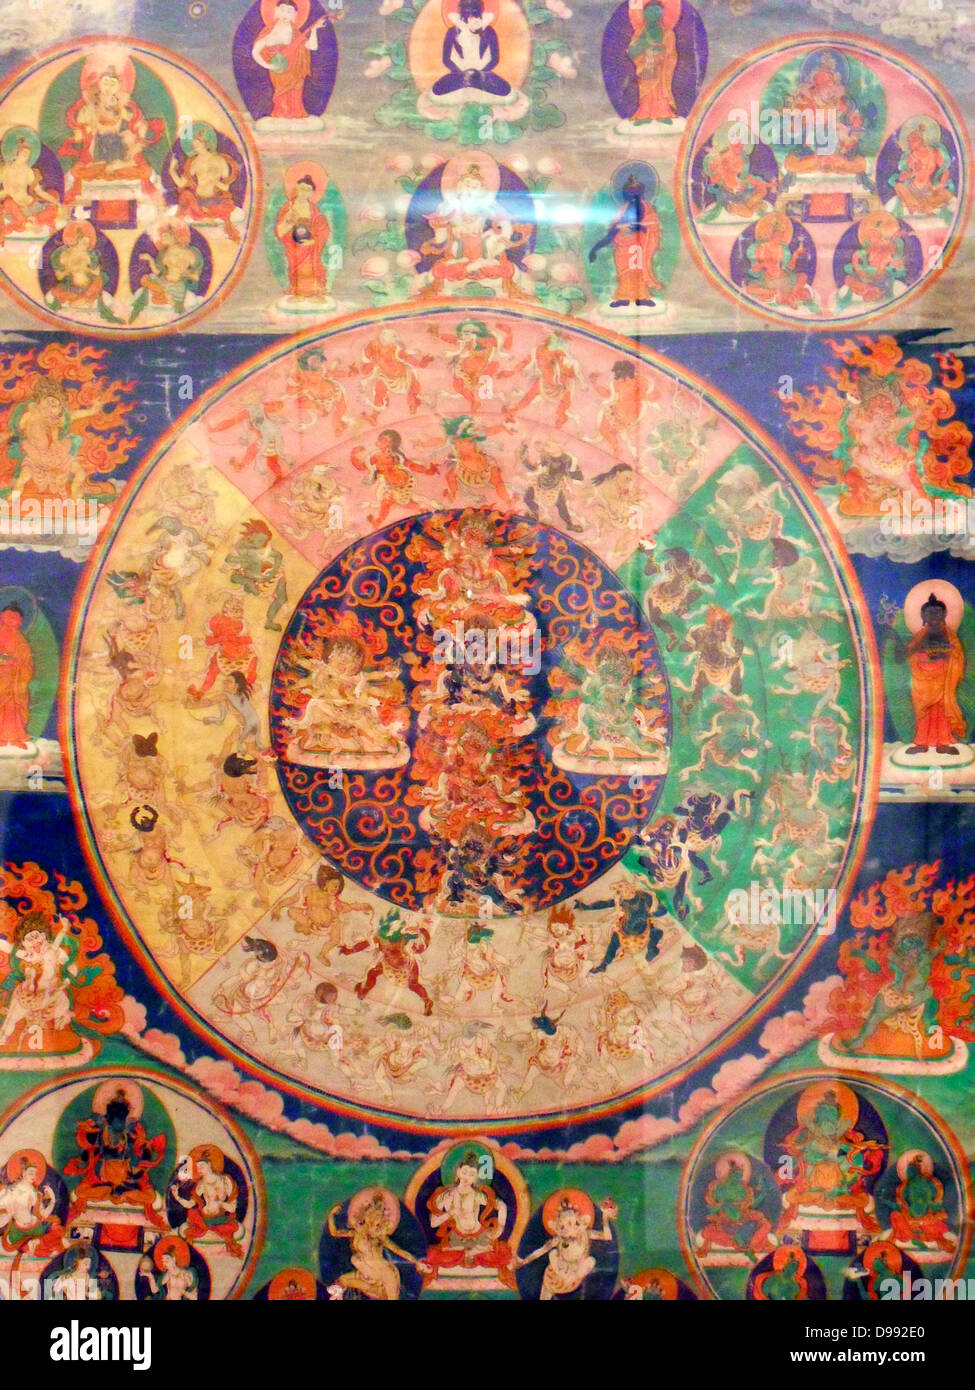 Auf dieser thanka Gottheiten versammelt heftige apparraissent, dass der Verstorbene während des Bardo zu suchen. 19 Mandala Leinwand (Malerei) aus Tibet Stockfoto